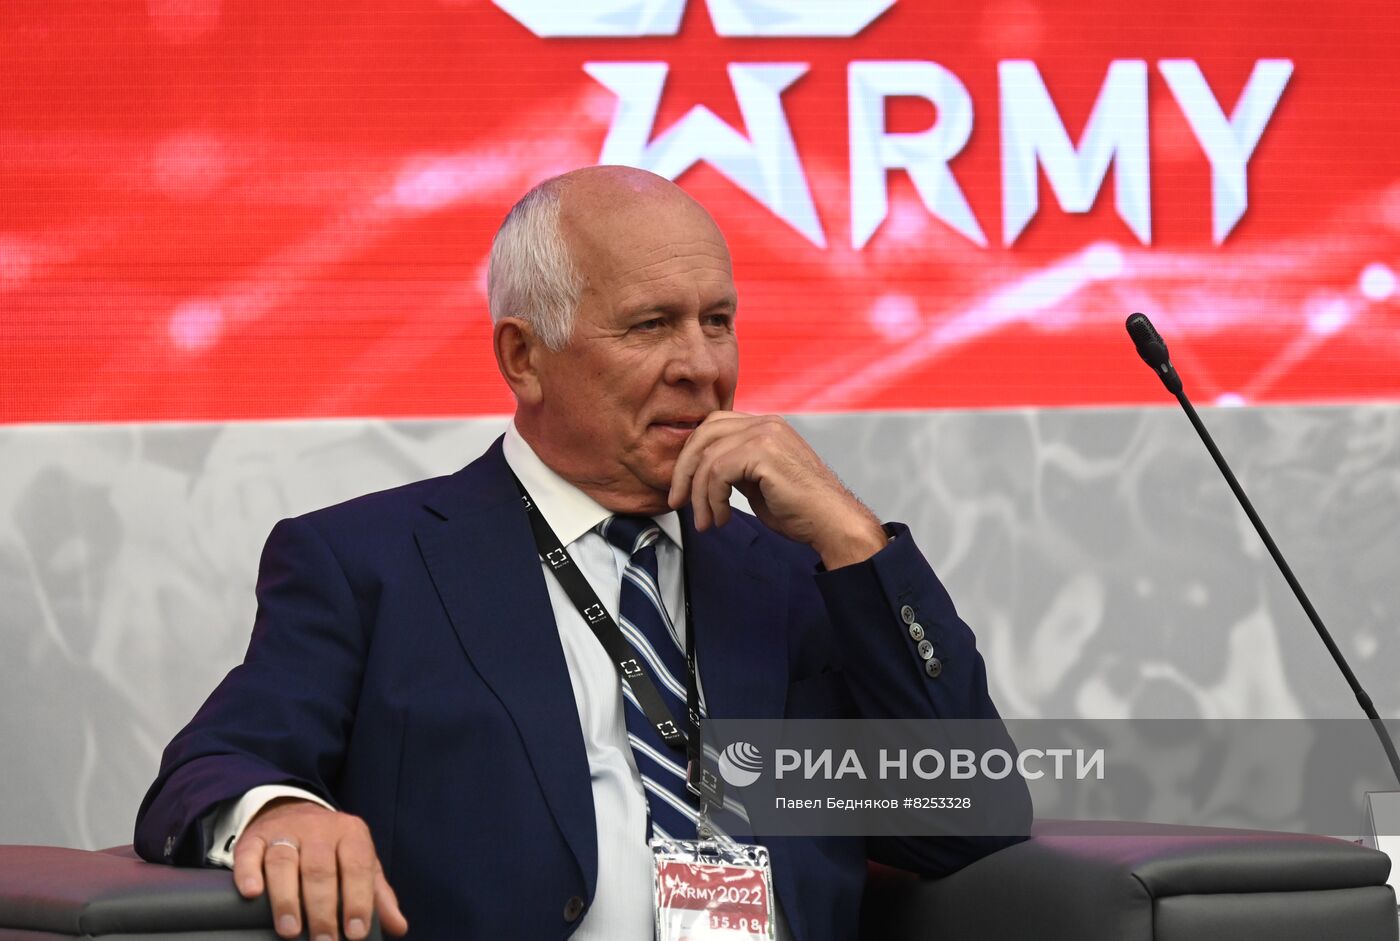 Открытие форума "Армия-2022" и армейских международных игр